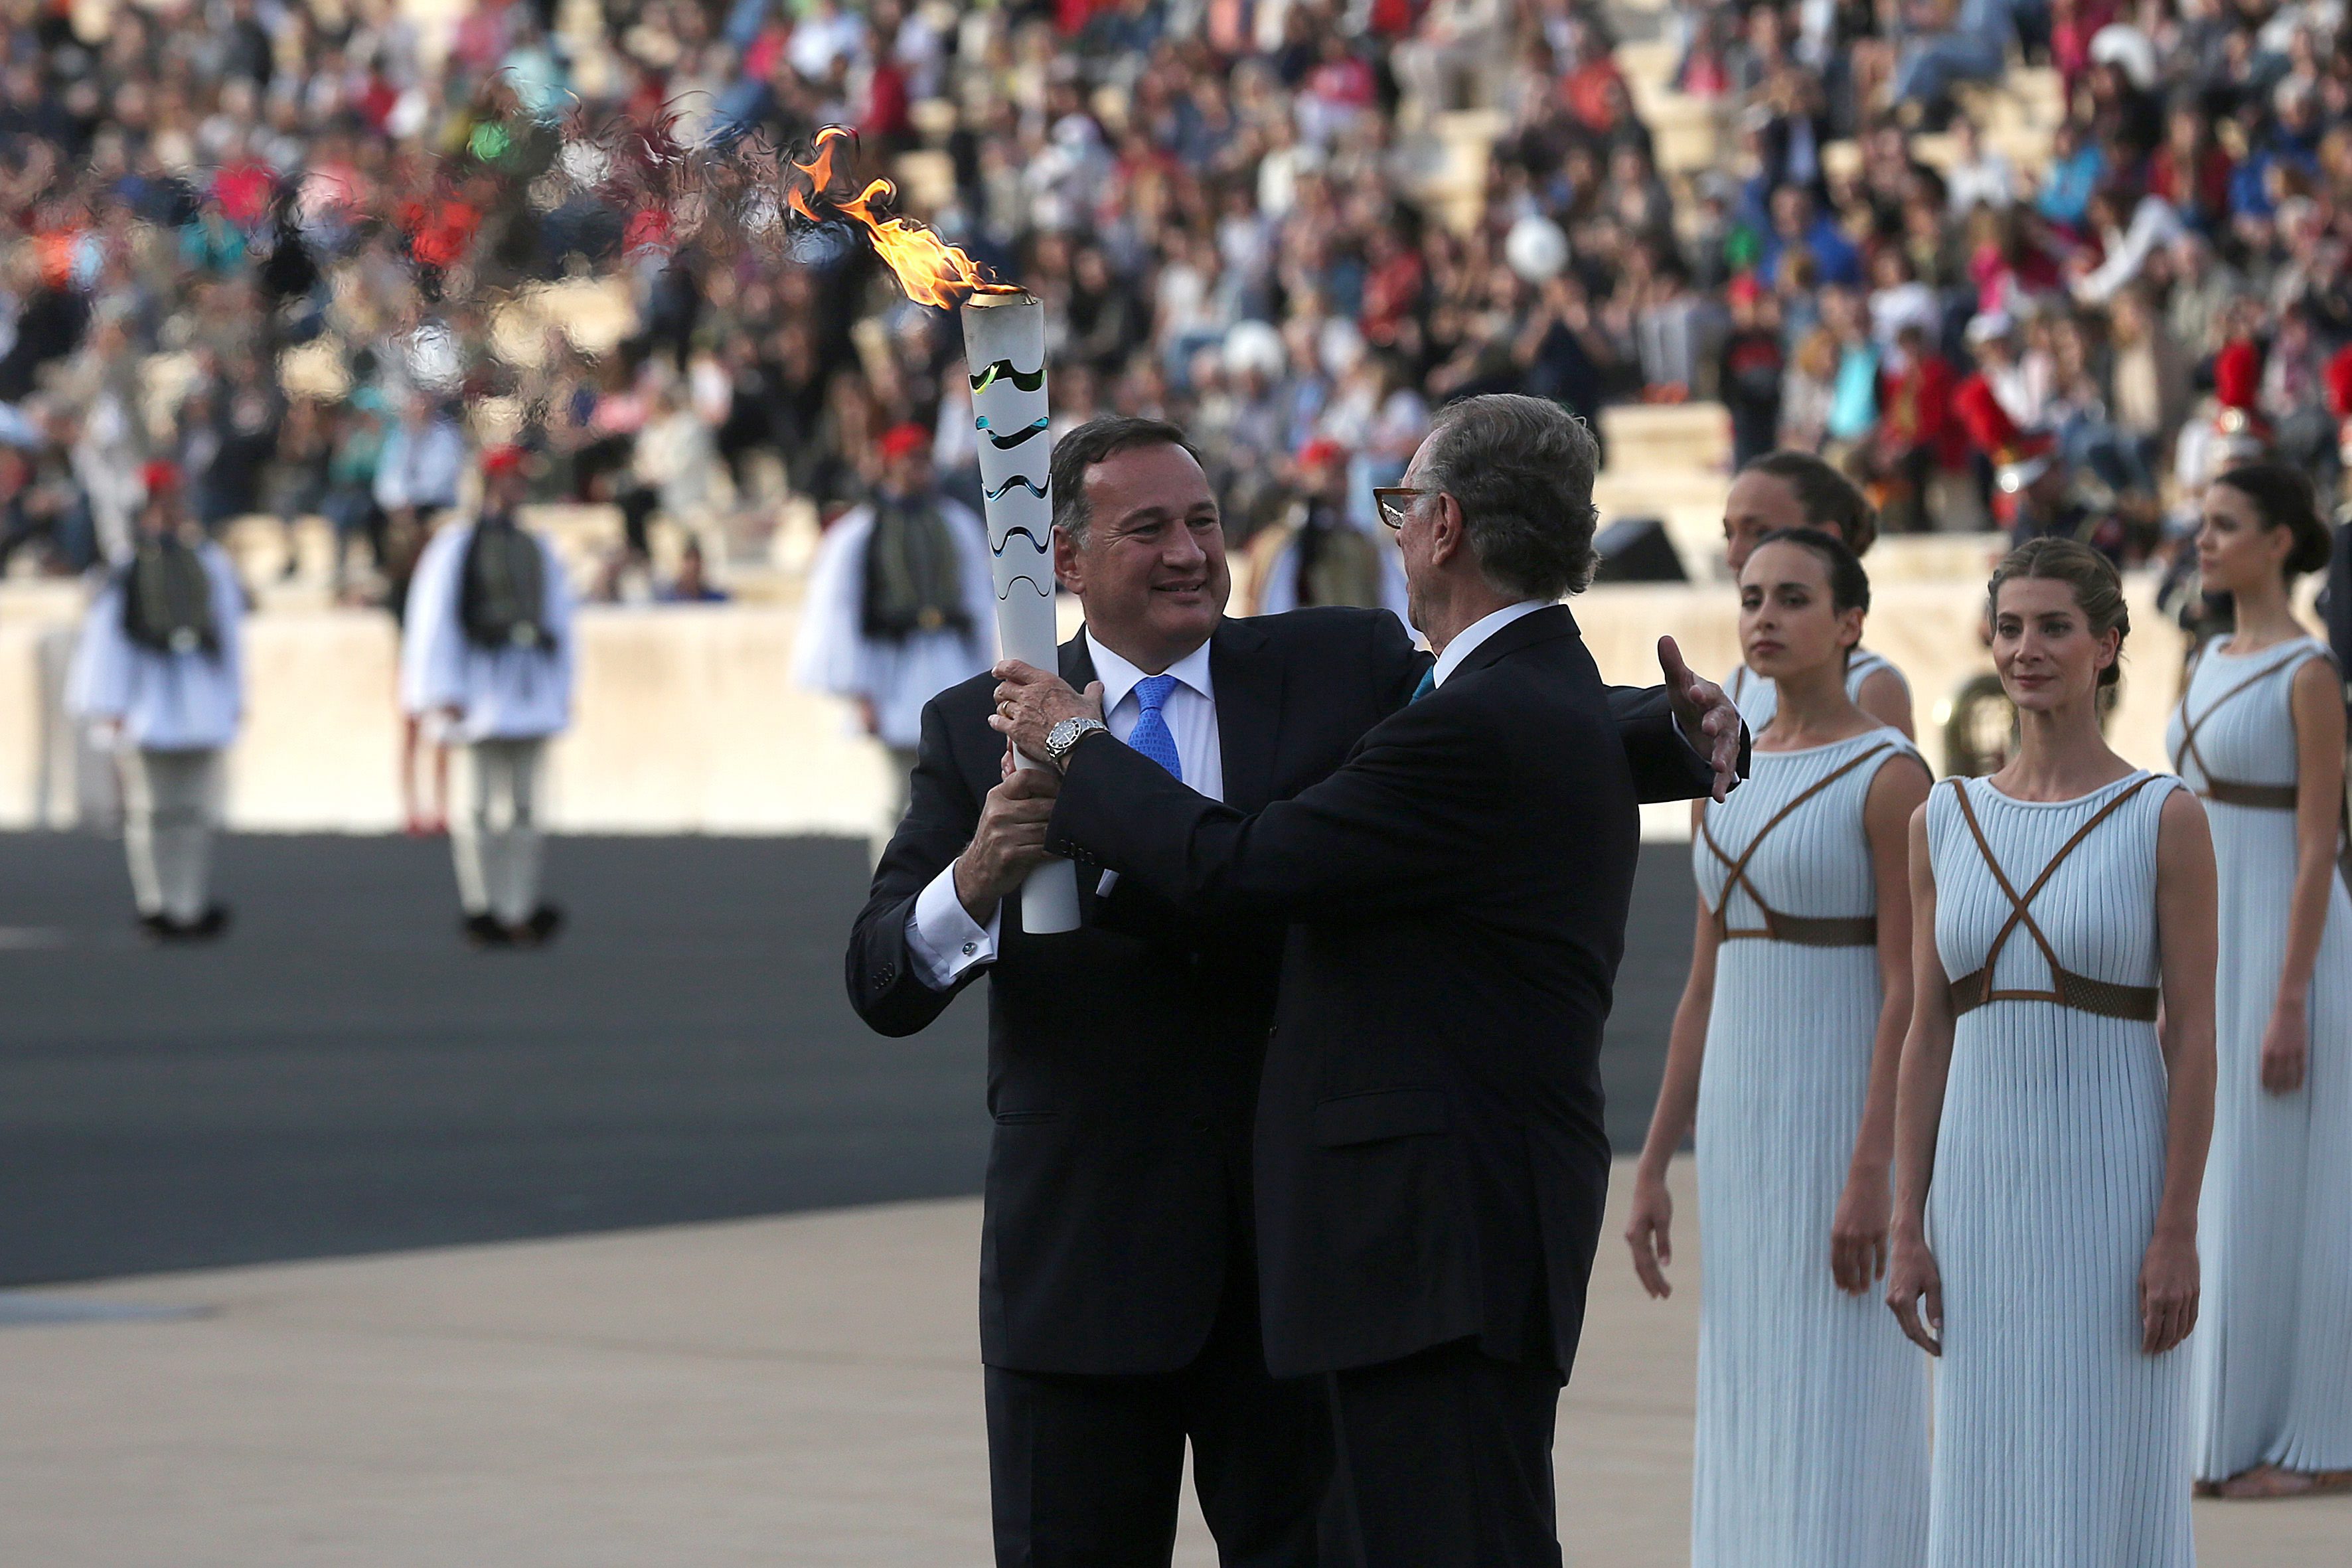 البرازيل تتسلم شعلة أولمبياد 2016 من اليونان